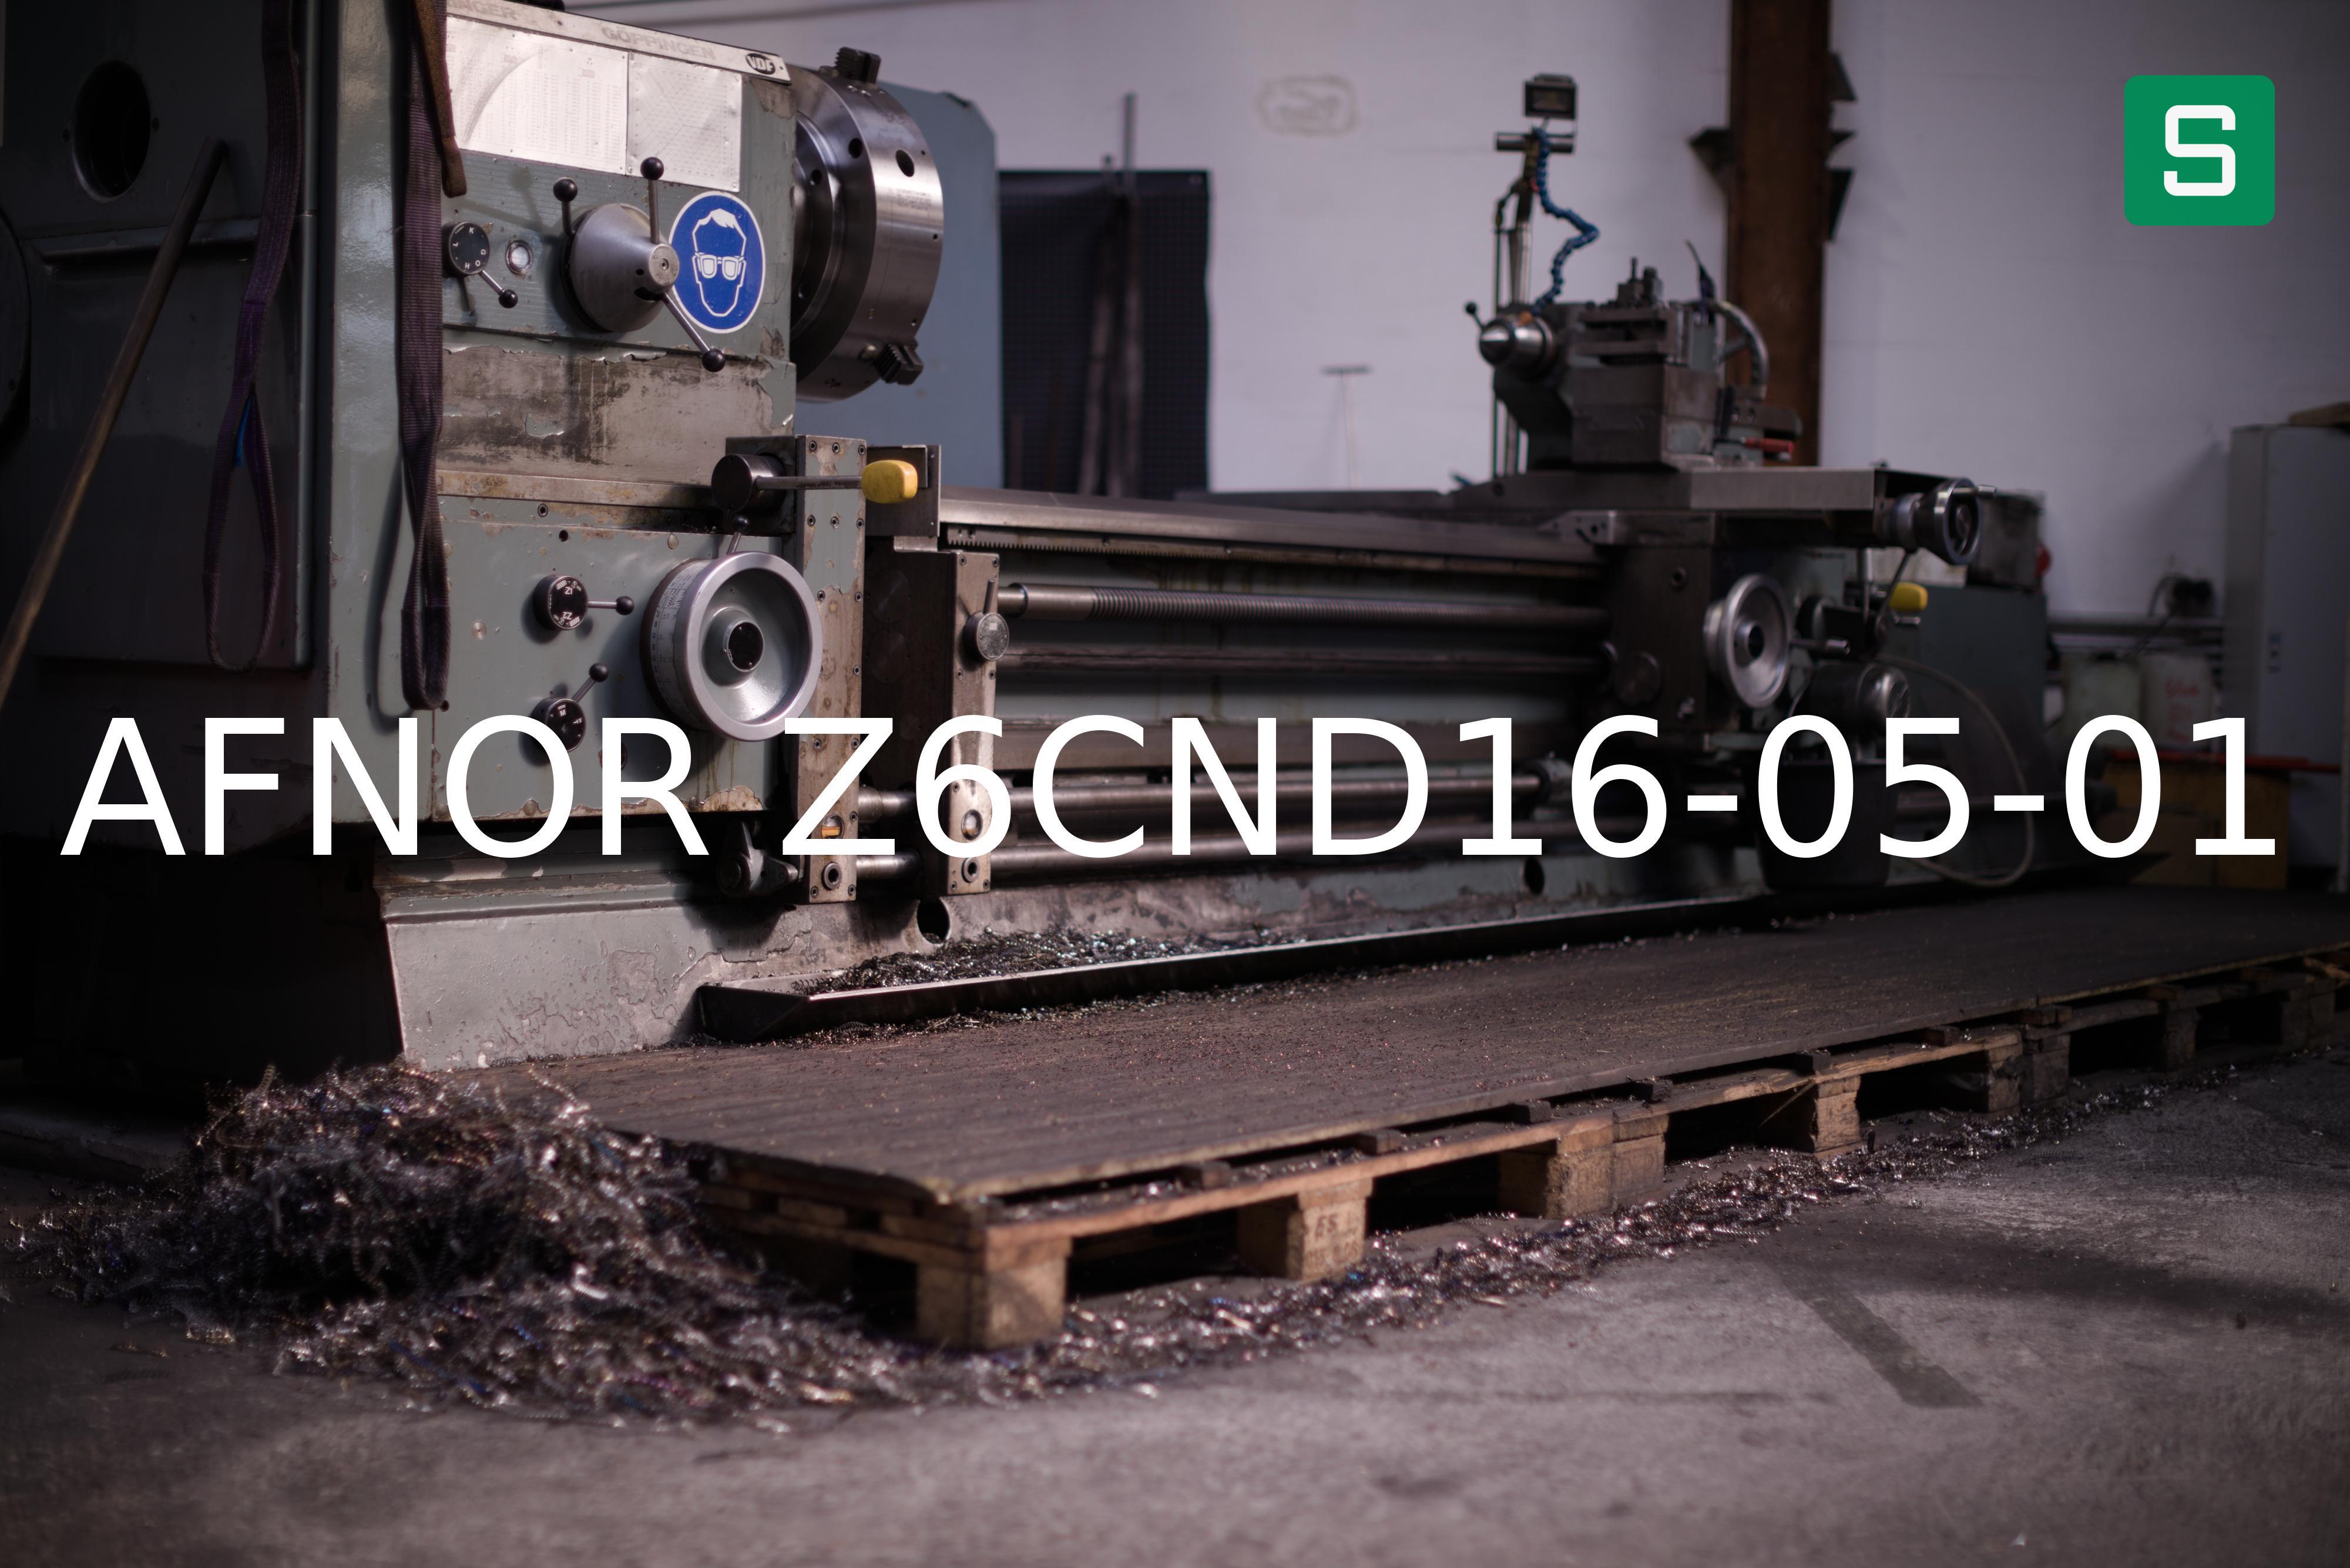 Steel Material: AFNOR Z6CND16-05-01